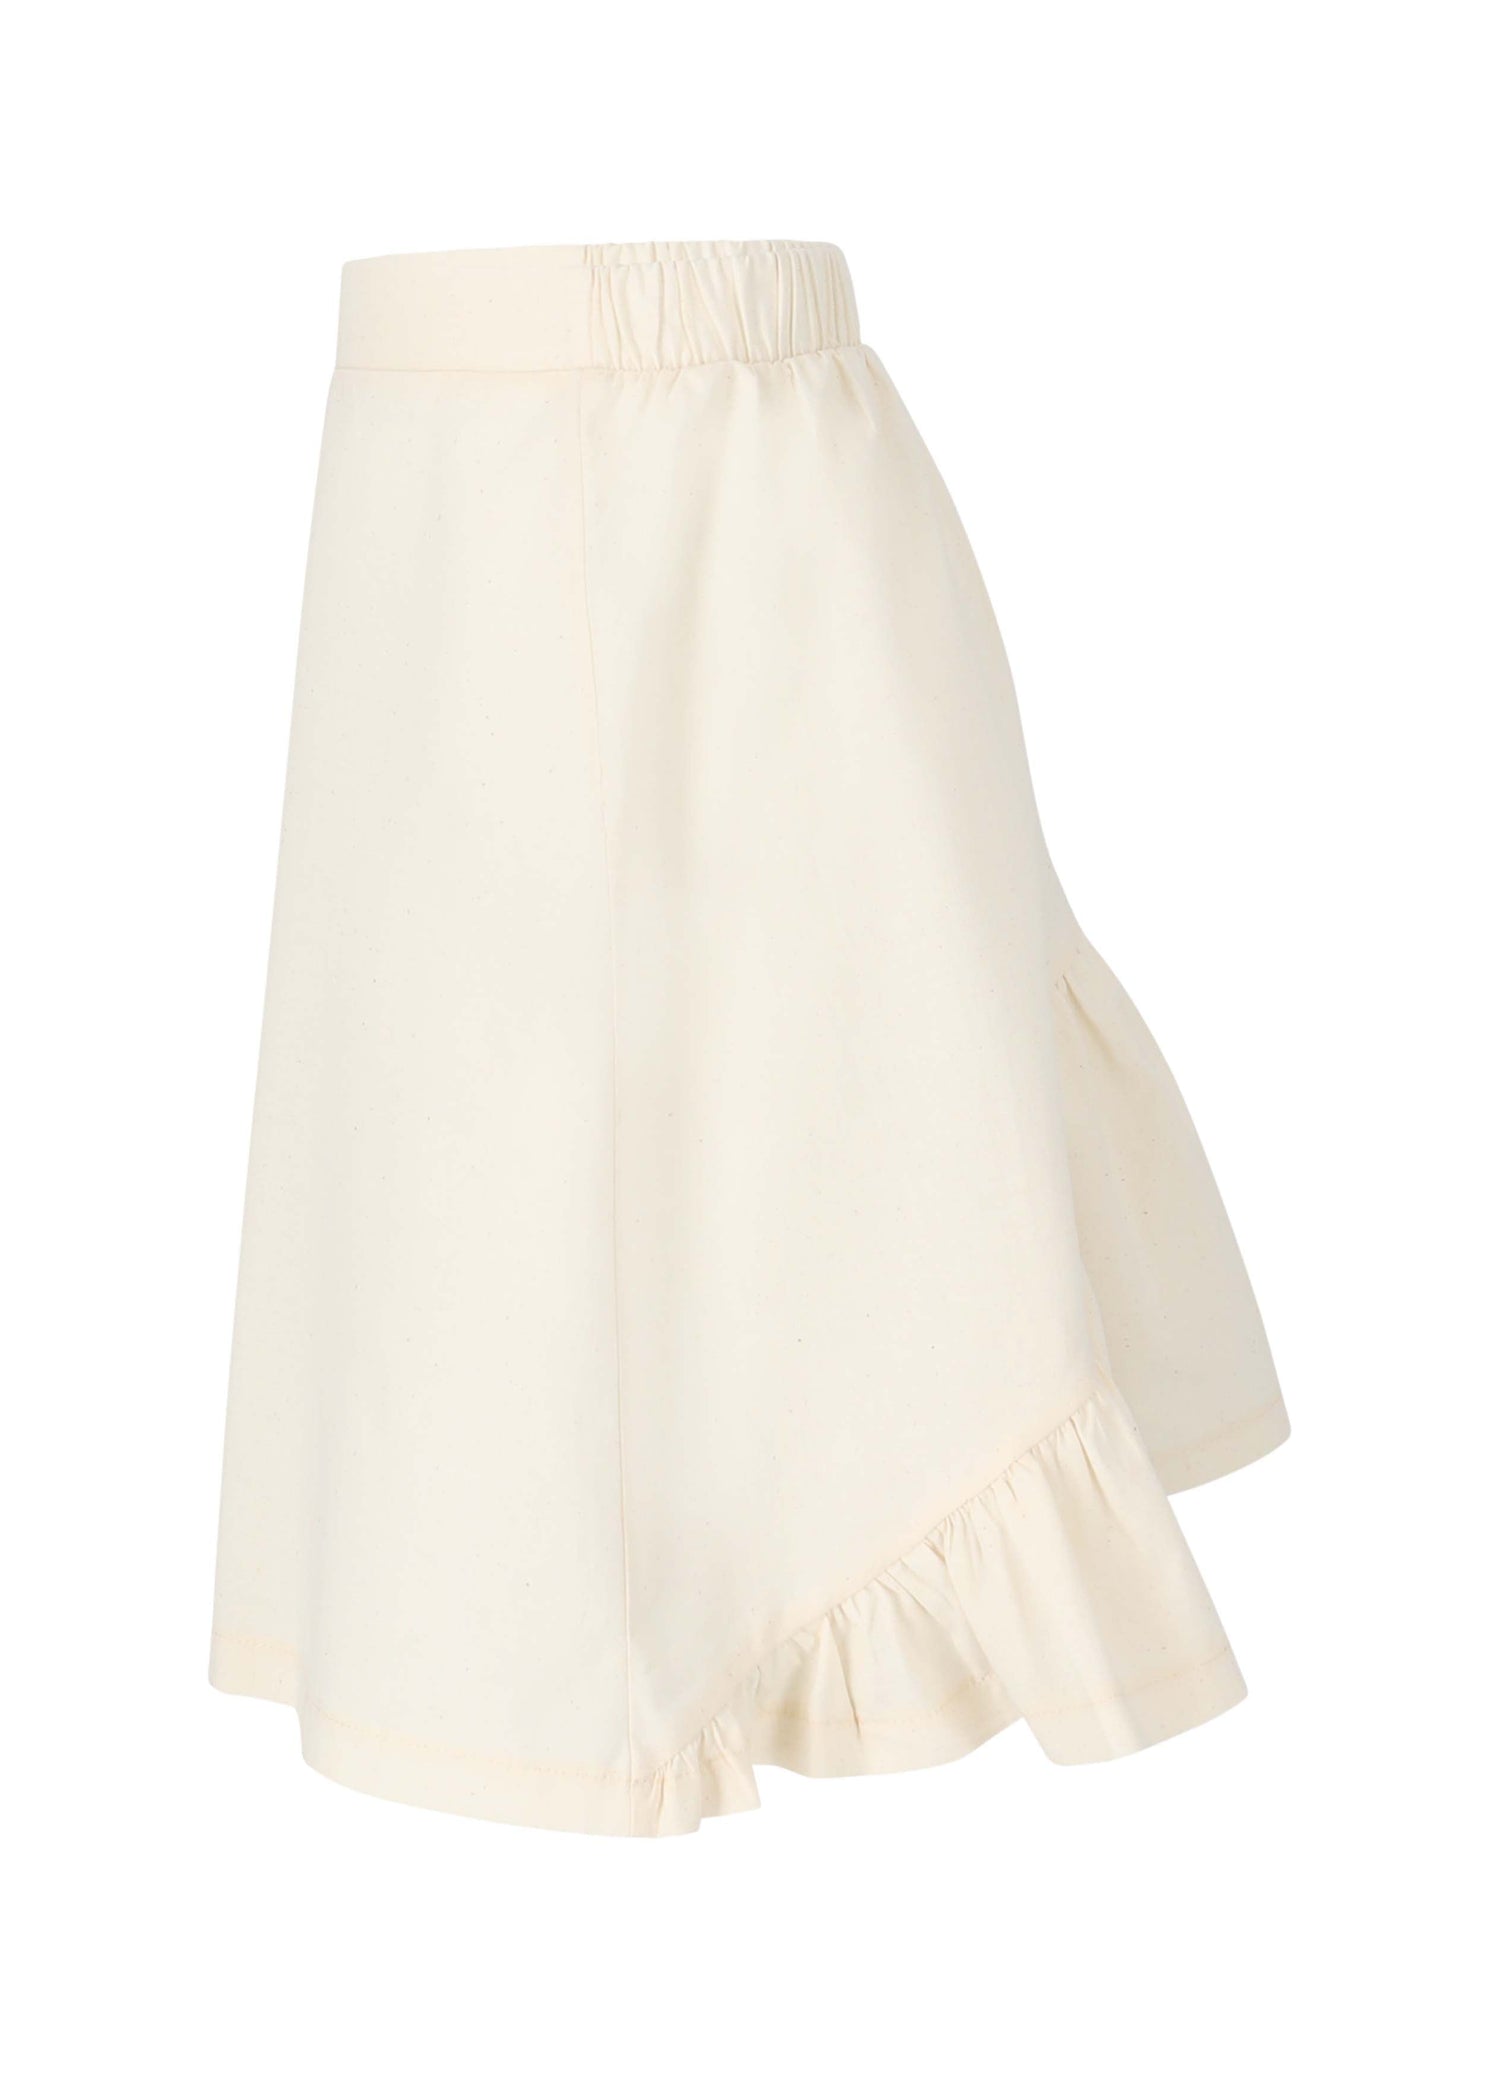 Skirt No. 7 - Natural Skirts LMN3 